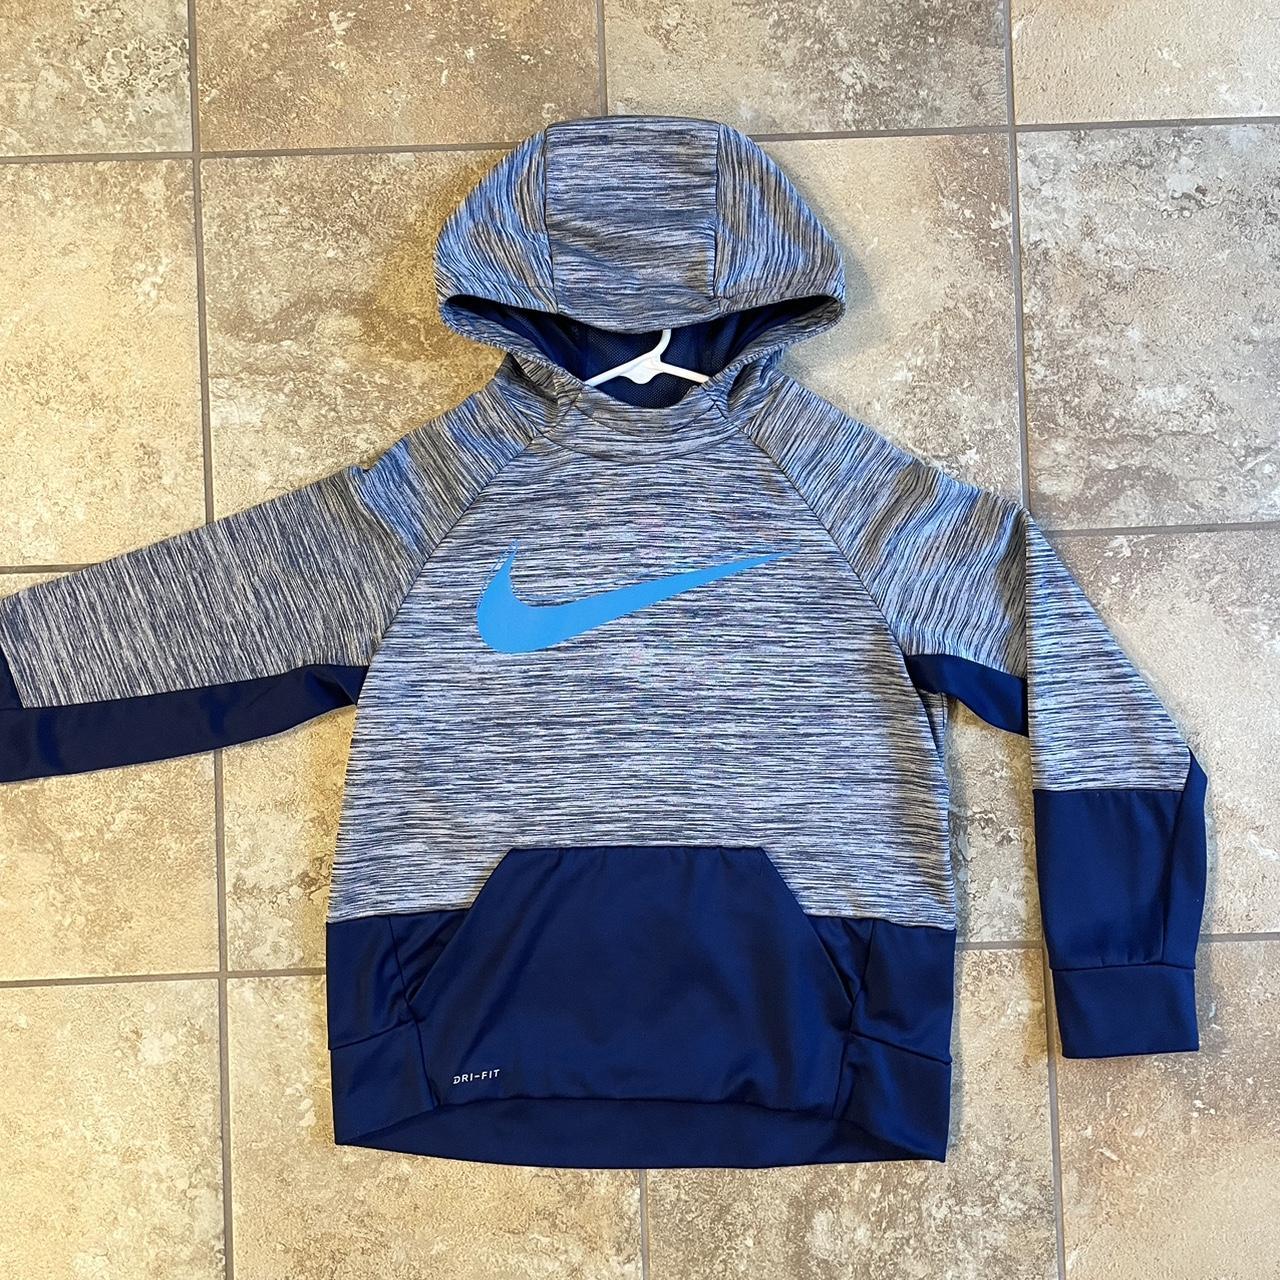 Nike Grey and Blue Hoodie